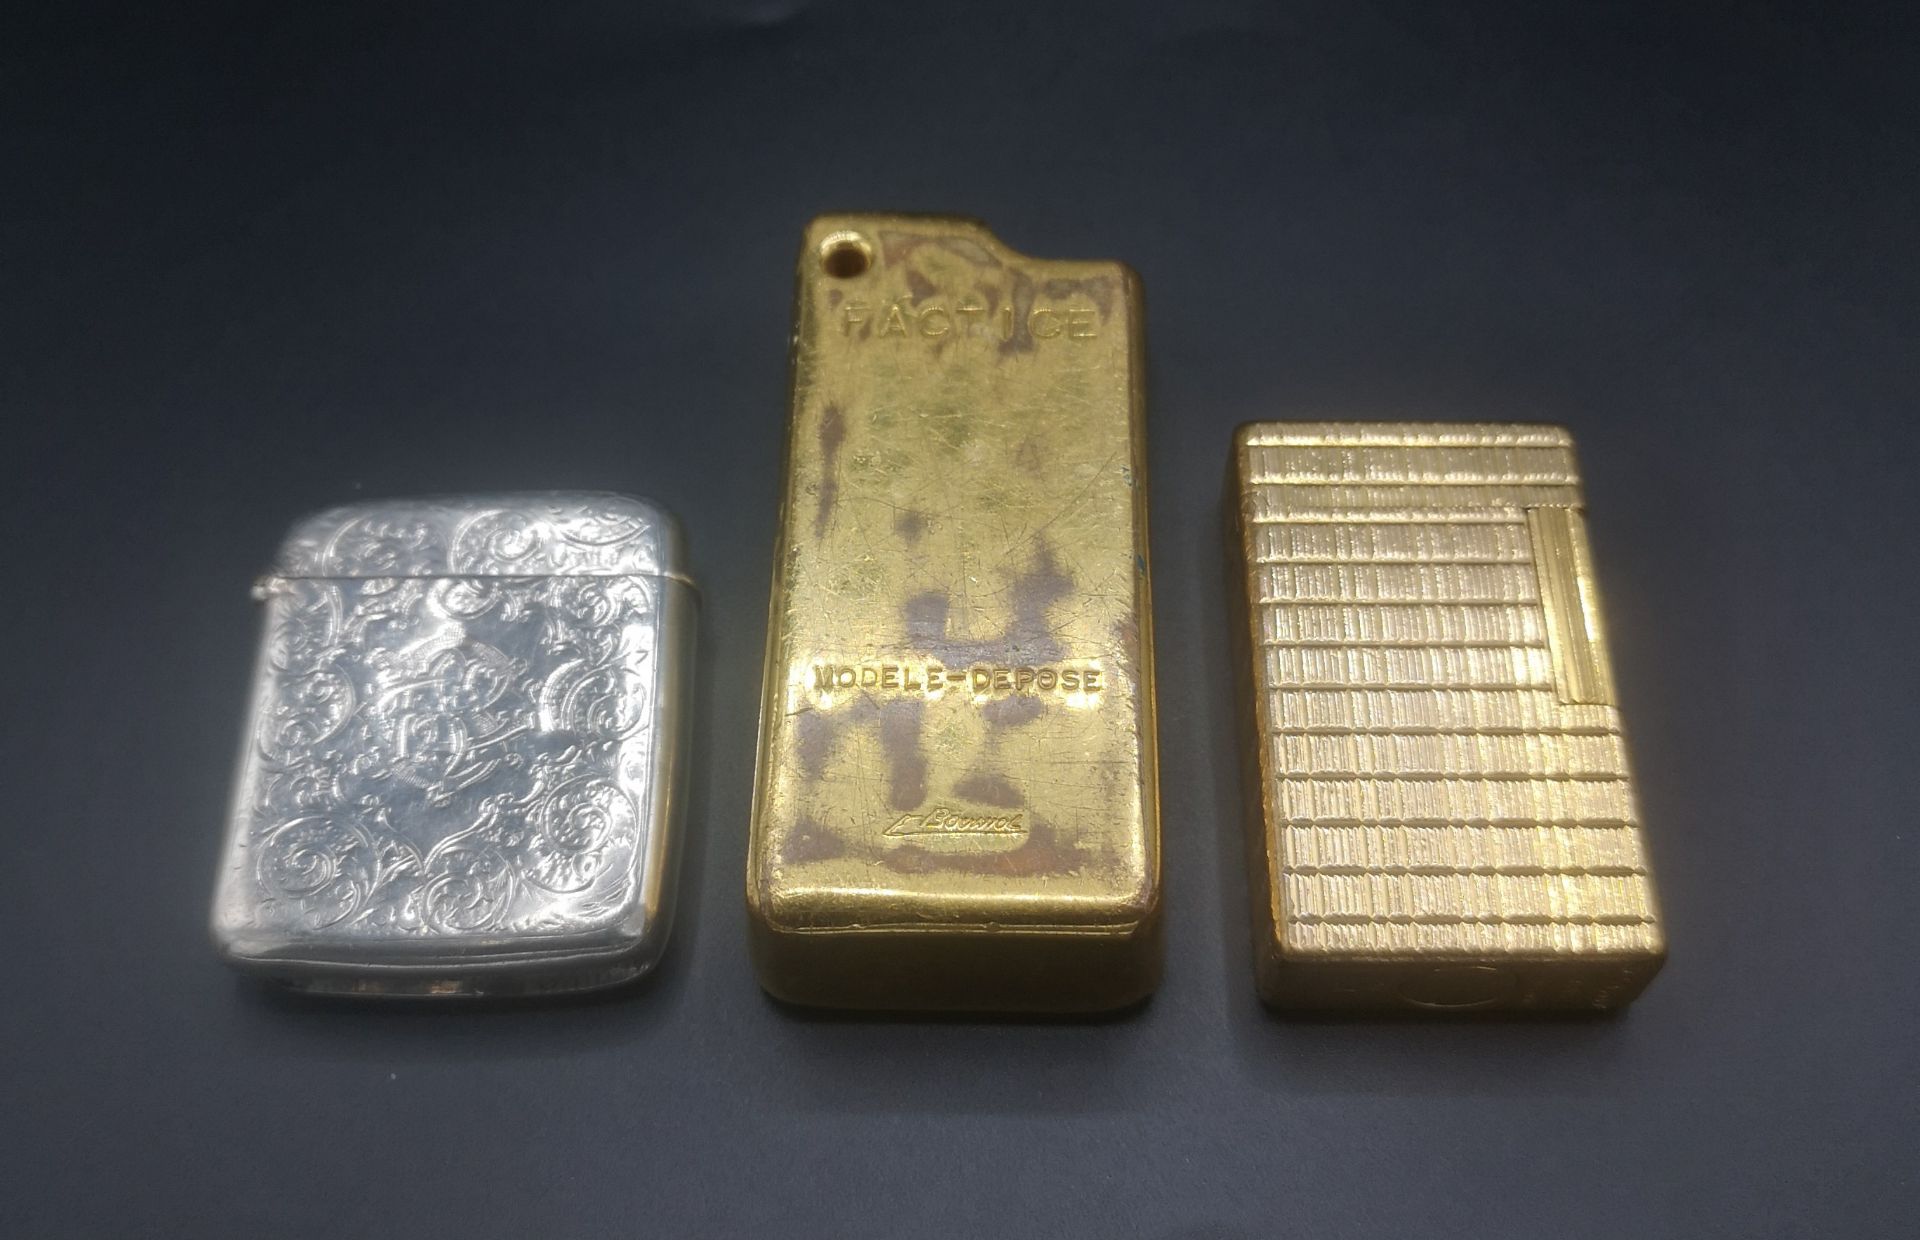 Silver vesta case, Dupont lighter and a gold coloured lighter case